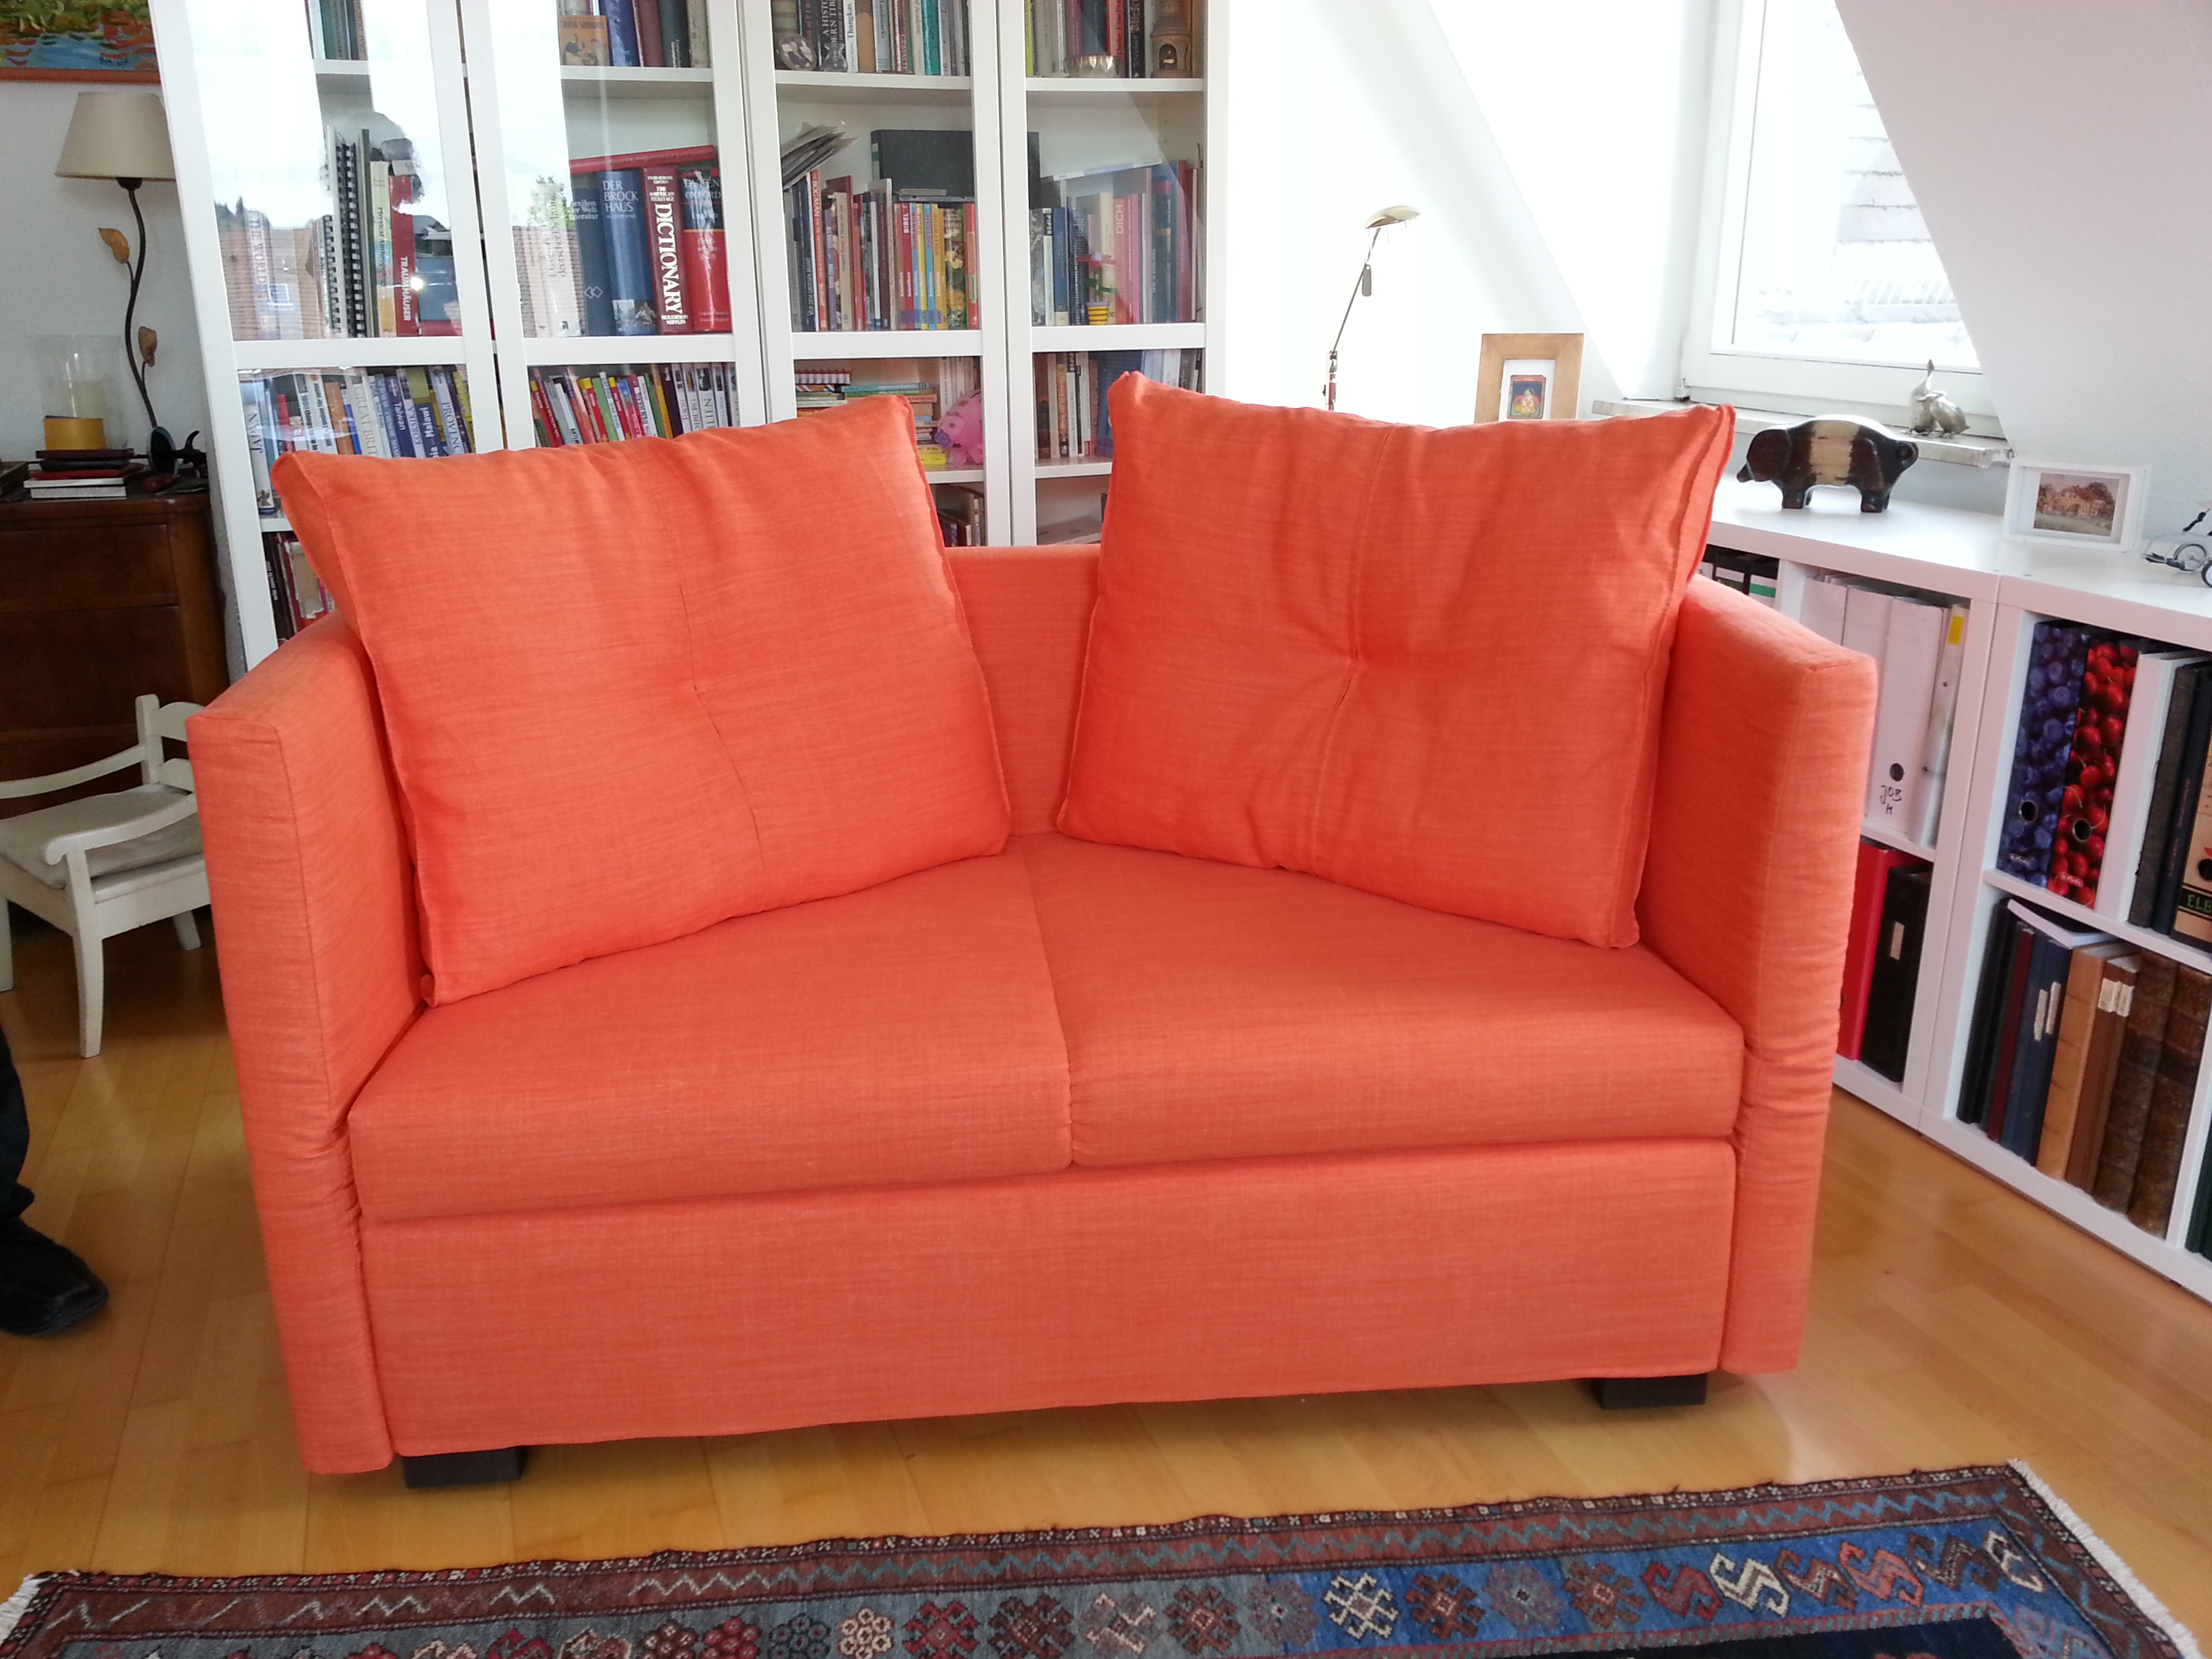 Bett und Couch in 69121 Heidelberg-Handschuhsheim